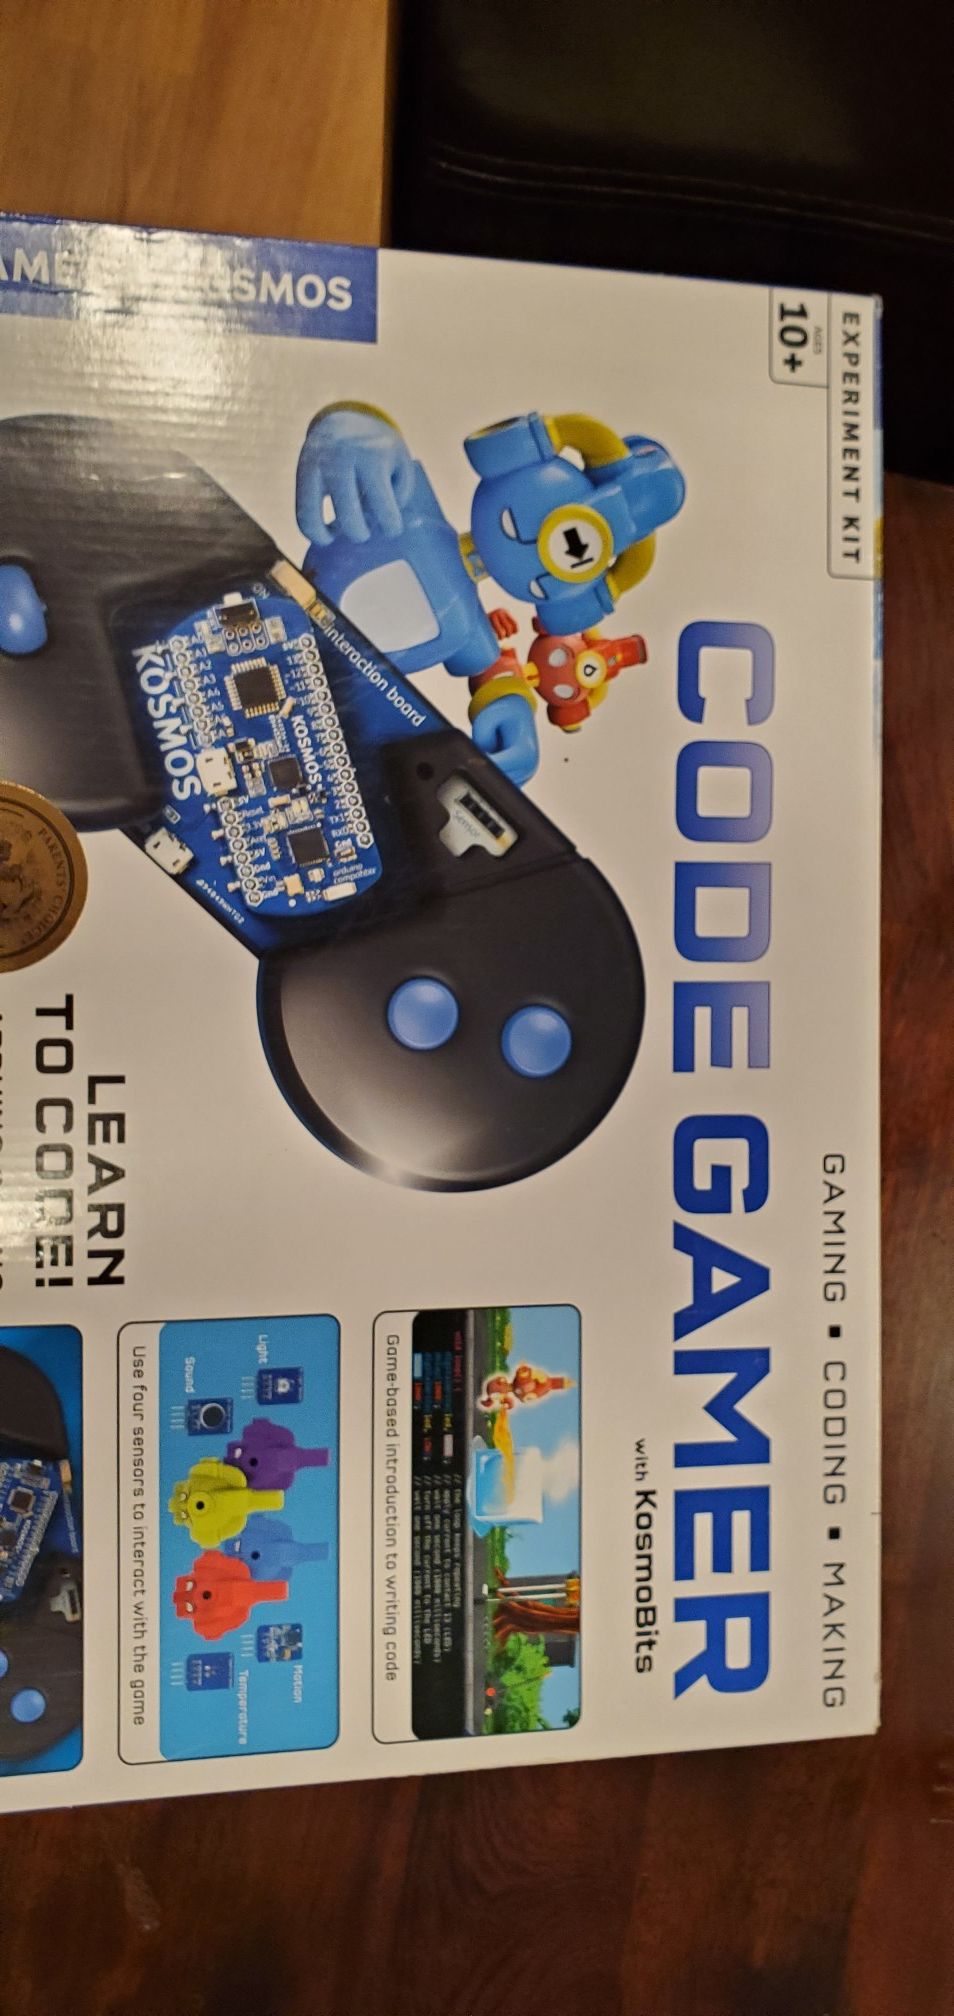 Code Gamer programming kit